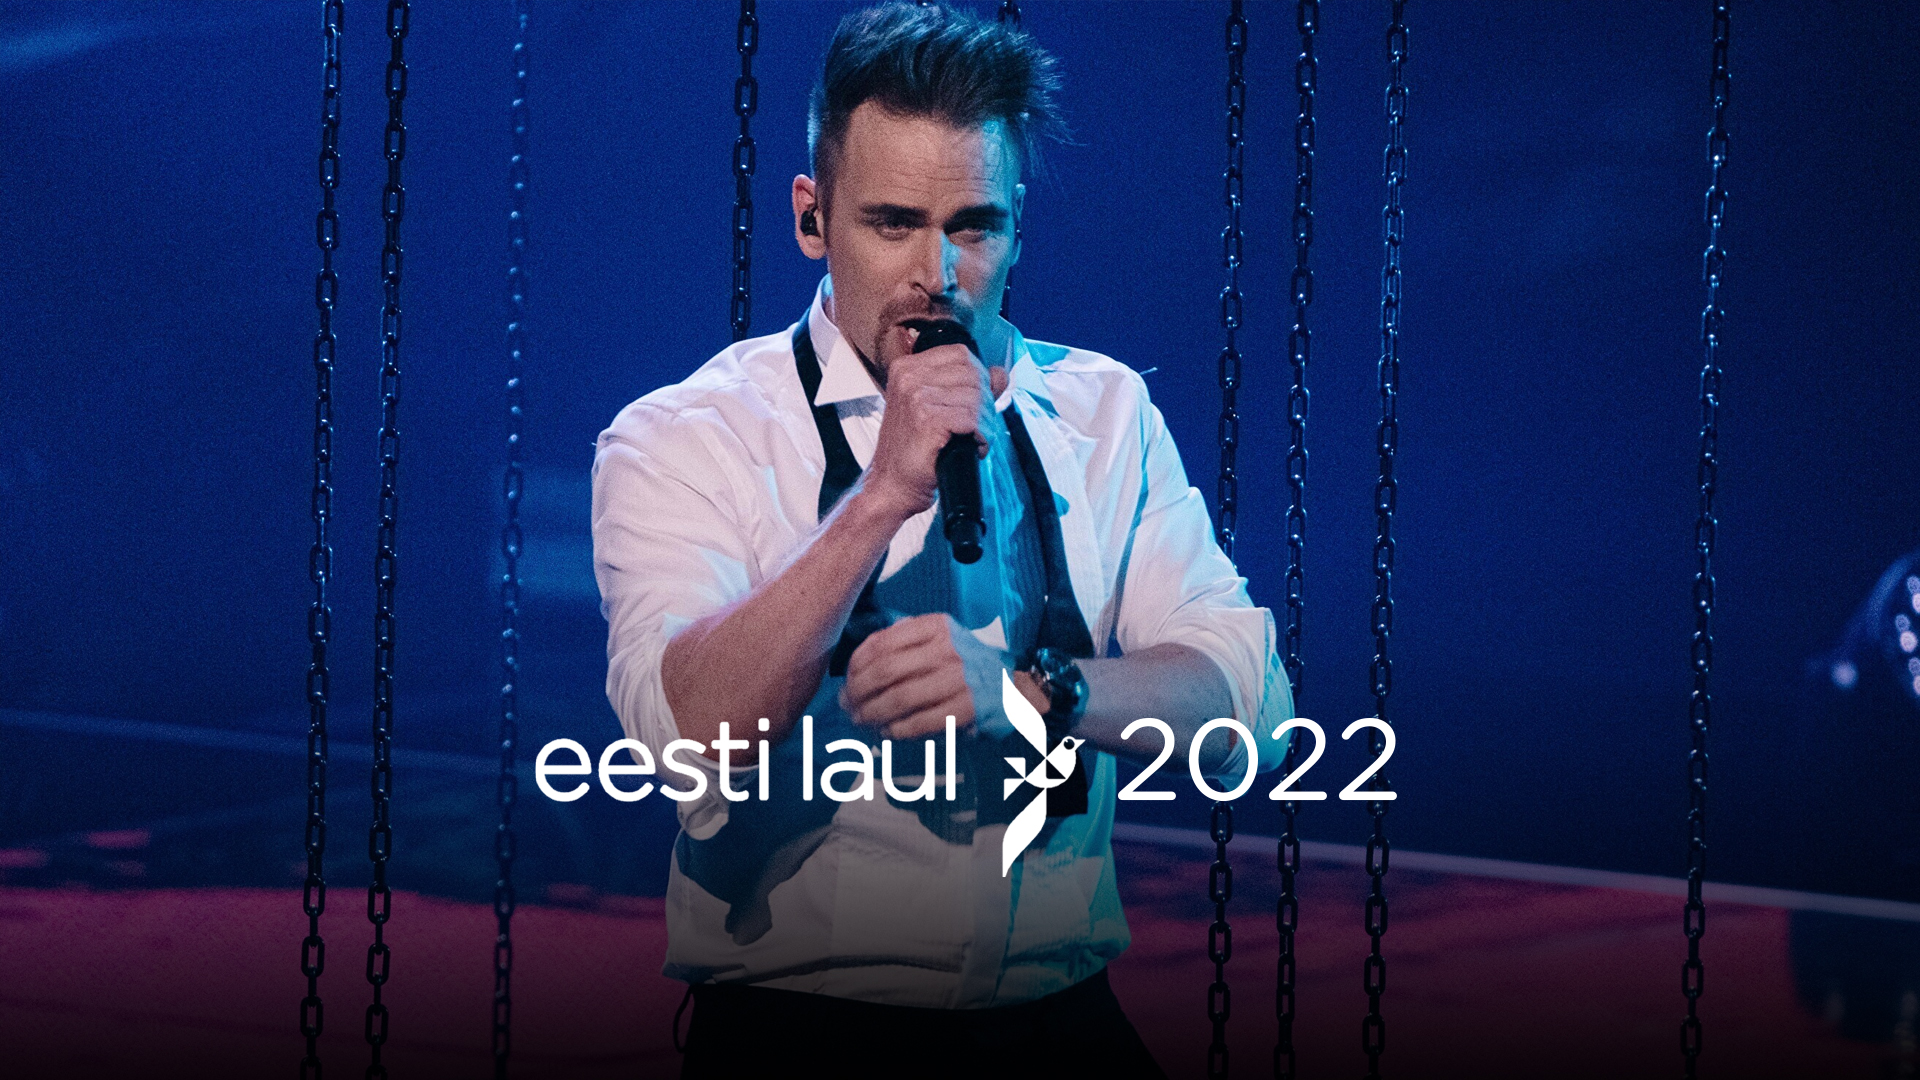 Estonia celebrará la final del Eesti Laul 2022 el 12 de Febrero